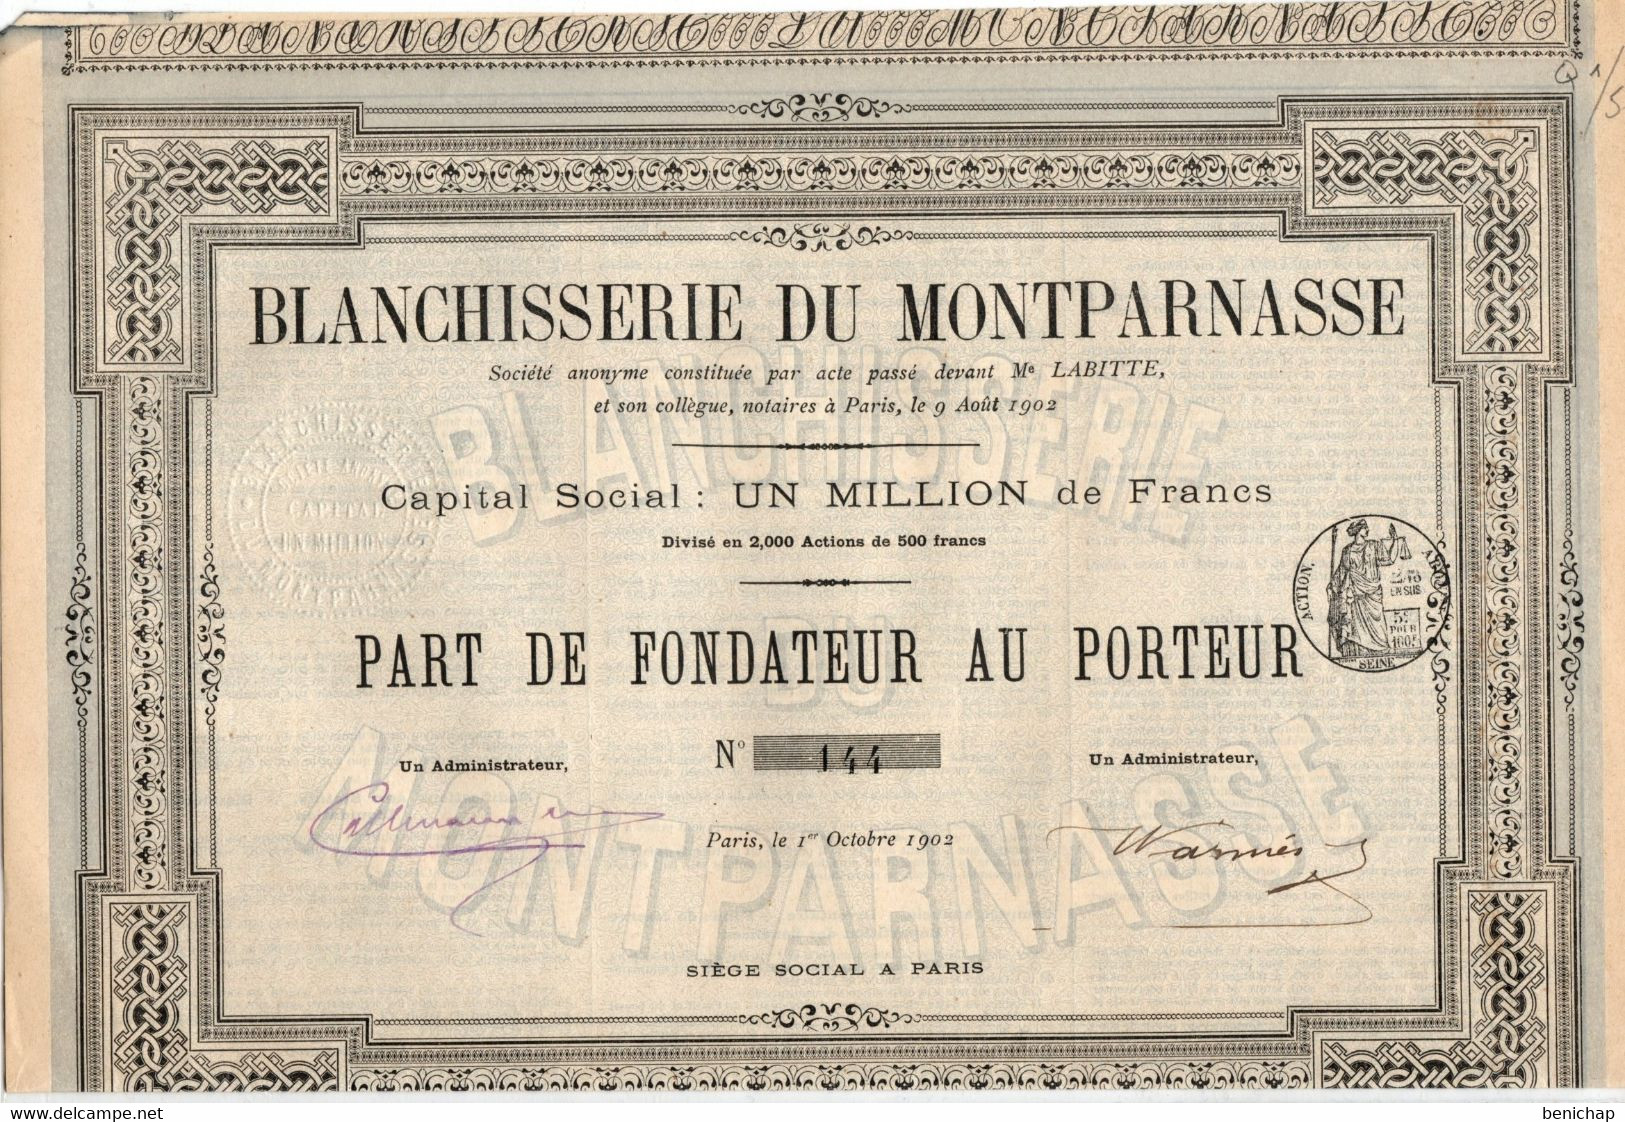 Blanchisserie Du Montparnasse S.A.- Part De Fondateur Au Porteur - Paris Octobre 1902. - Textiel